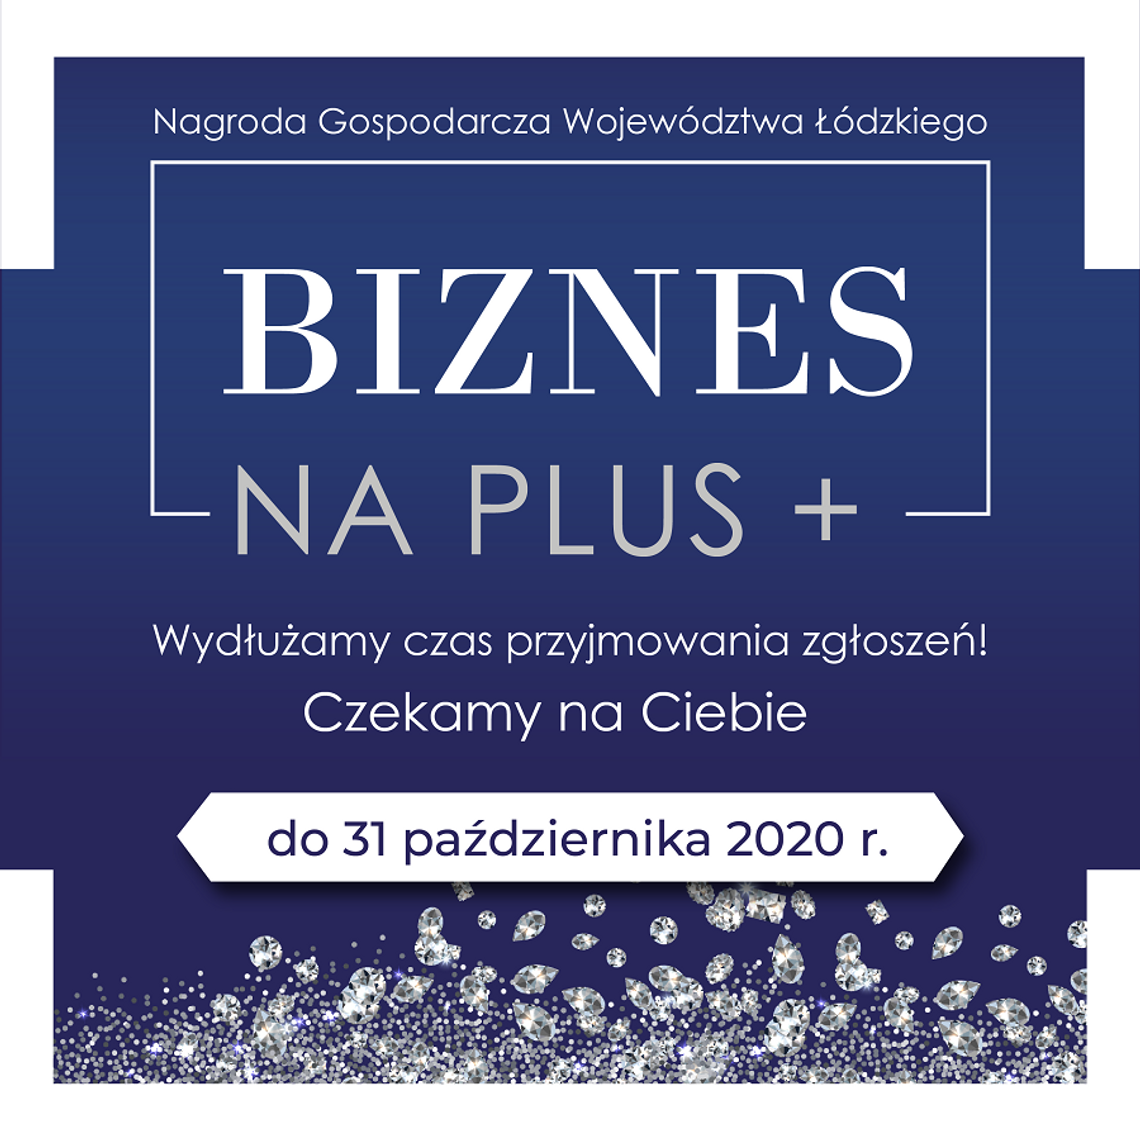  EUROPEJSKIE FORUM GOSPODARCZE - ŁÓDZKIE 2020. CZAS START! 